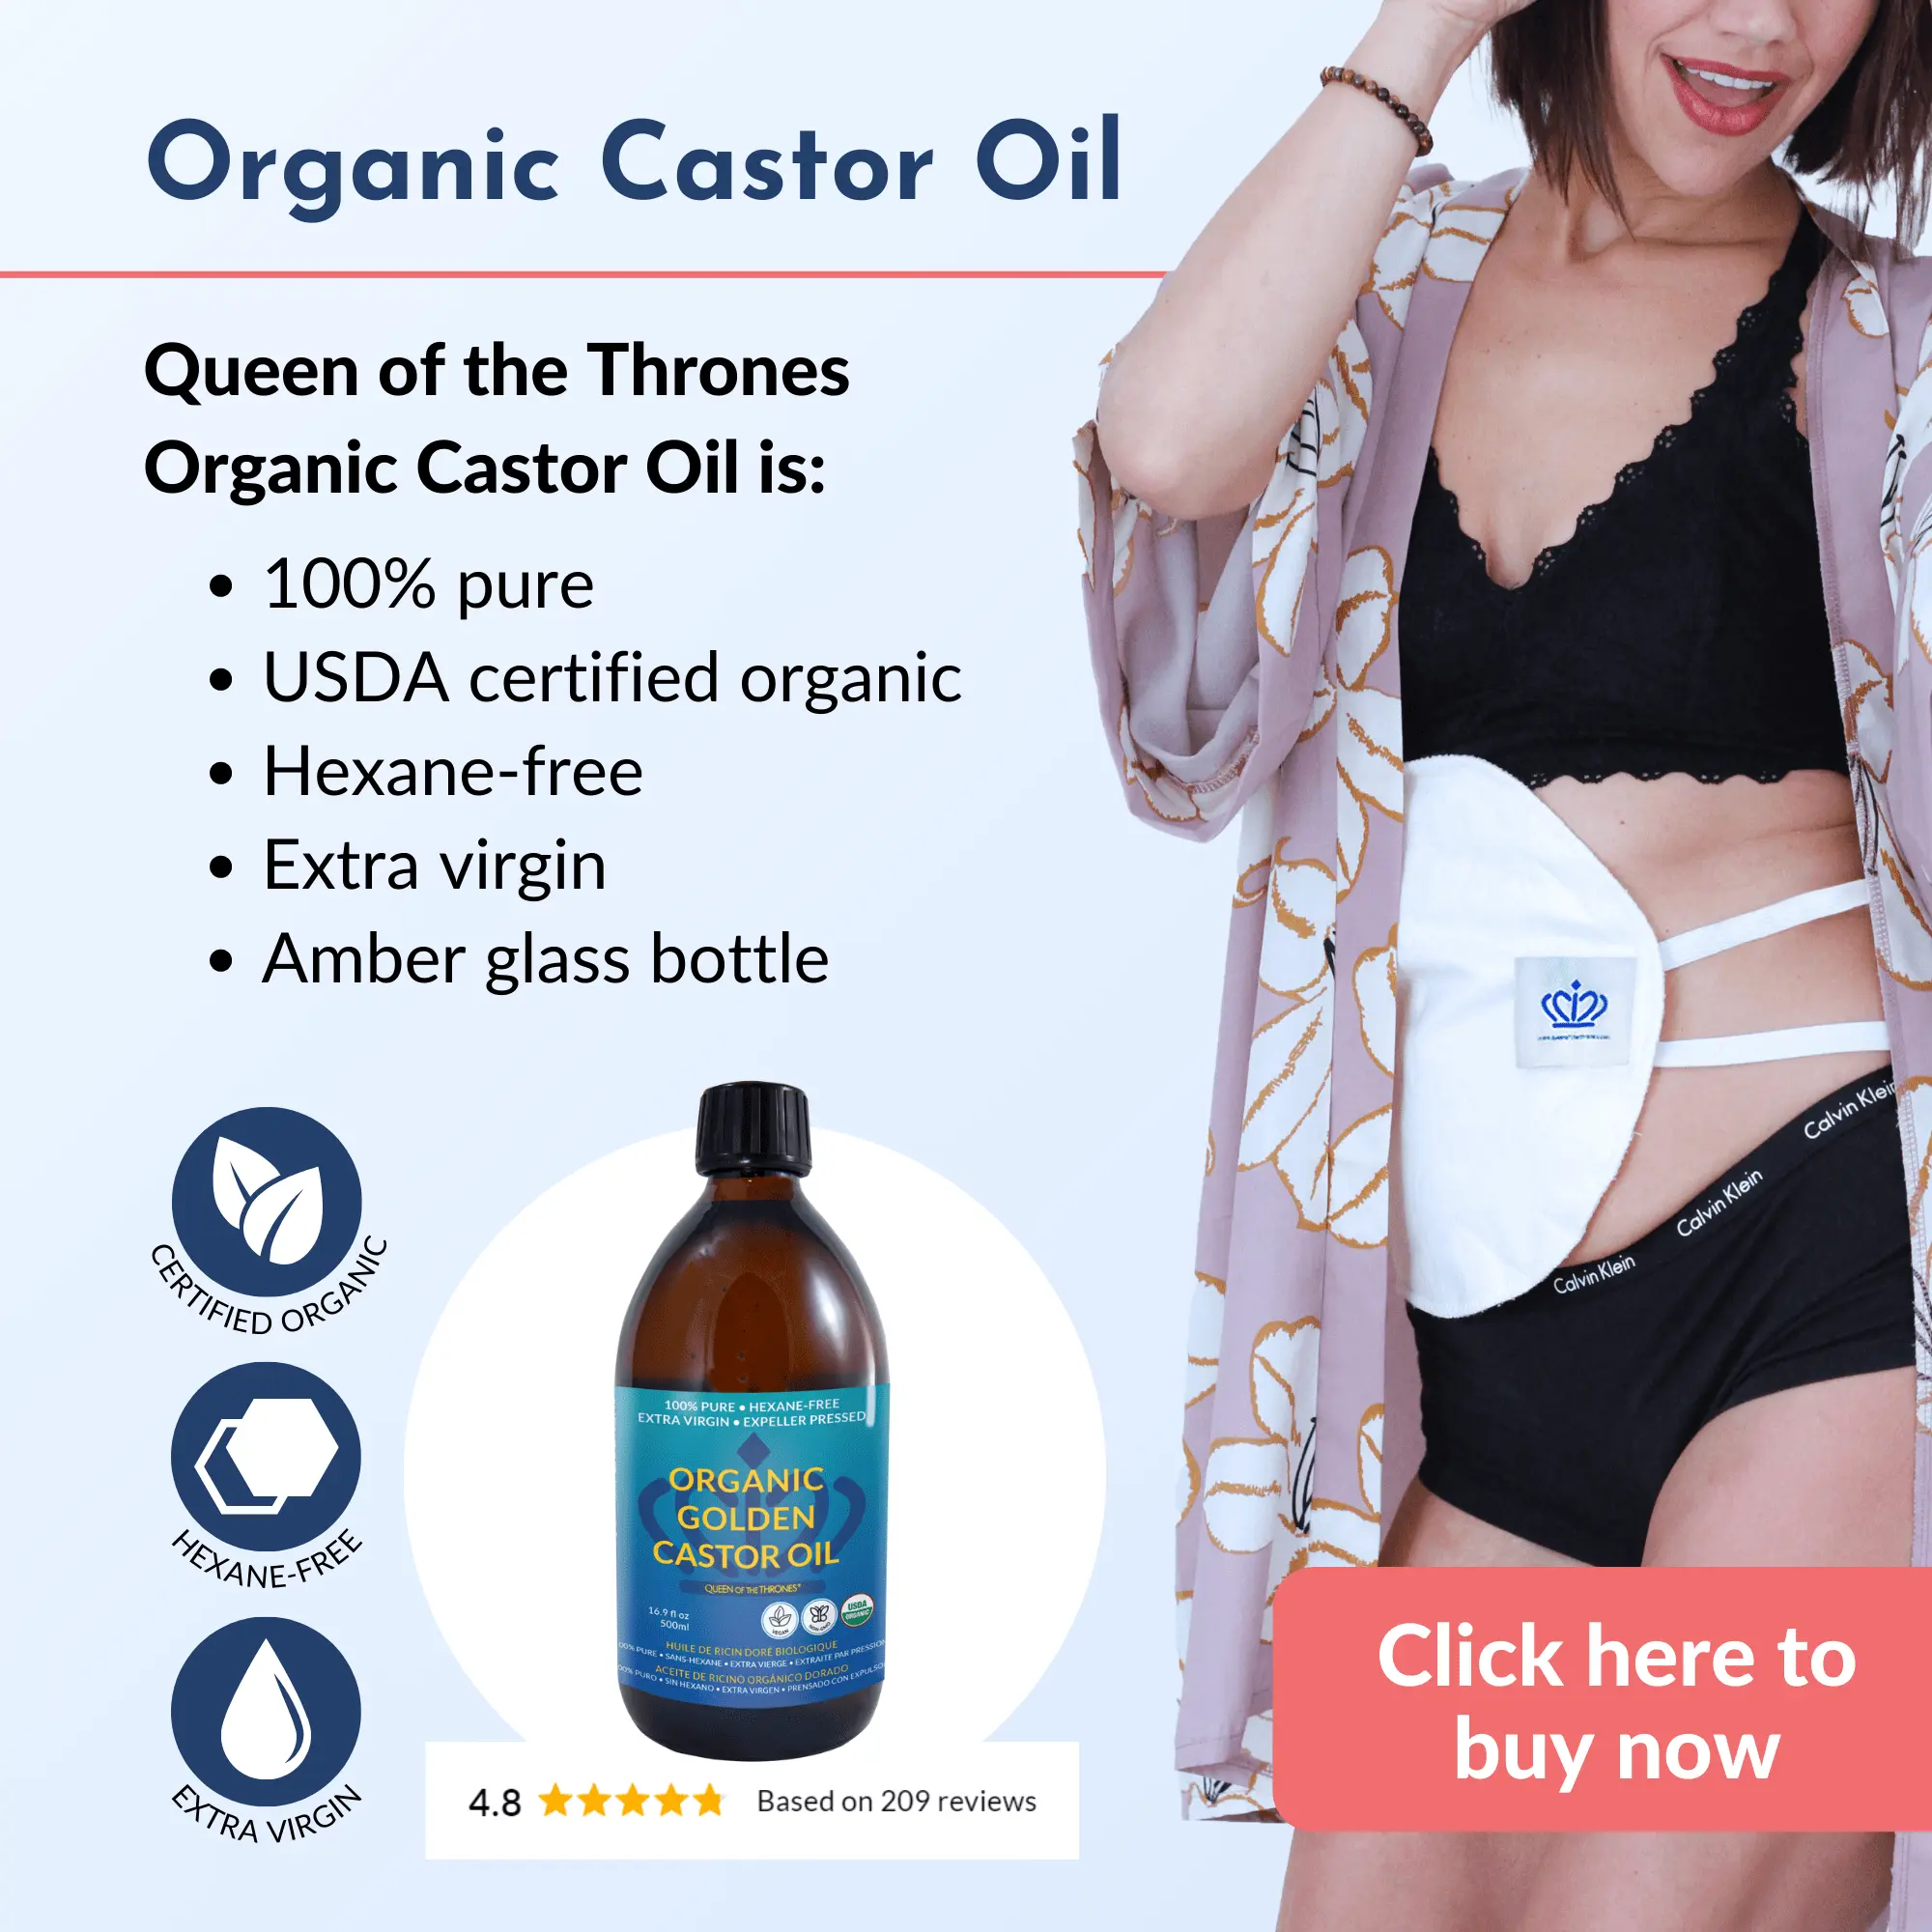 Features of Queen of the Thrones Organic Castor Oil